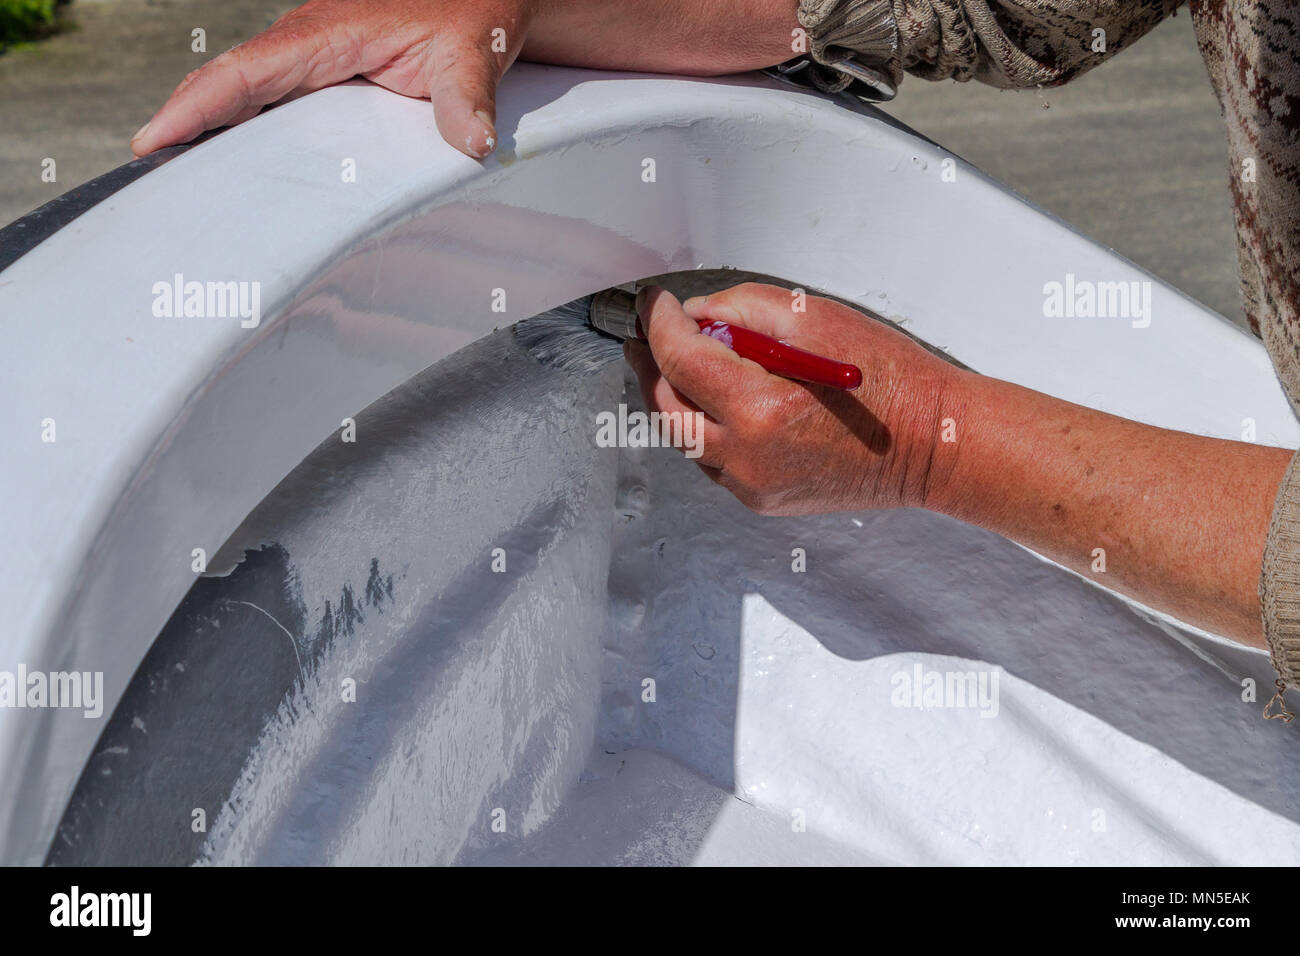 La peinture de la couche de peinture blanche sur la coque en fibre de verre d'un bateau en fibre de verre, à l'aide de laque marine. Banque D'Images